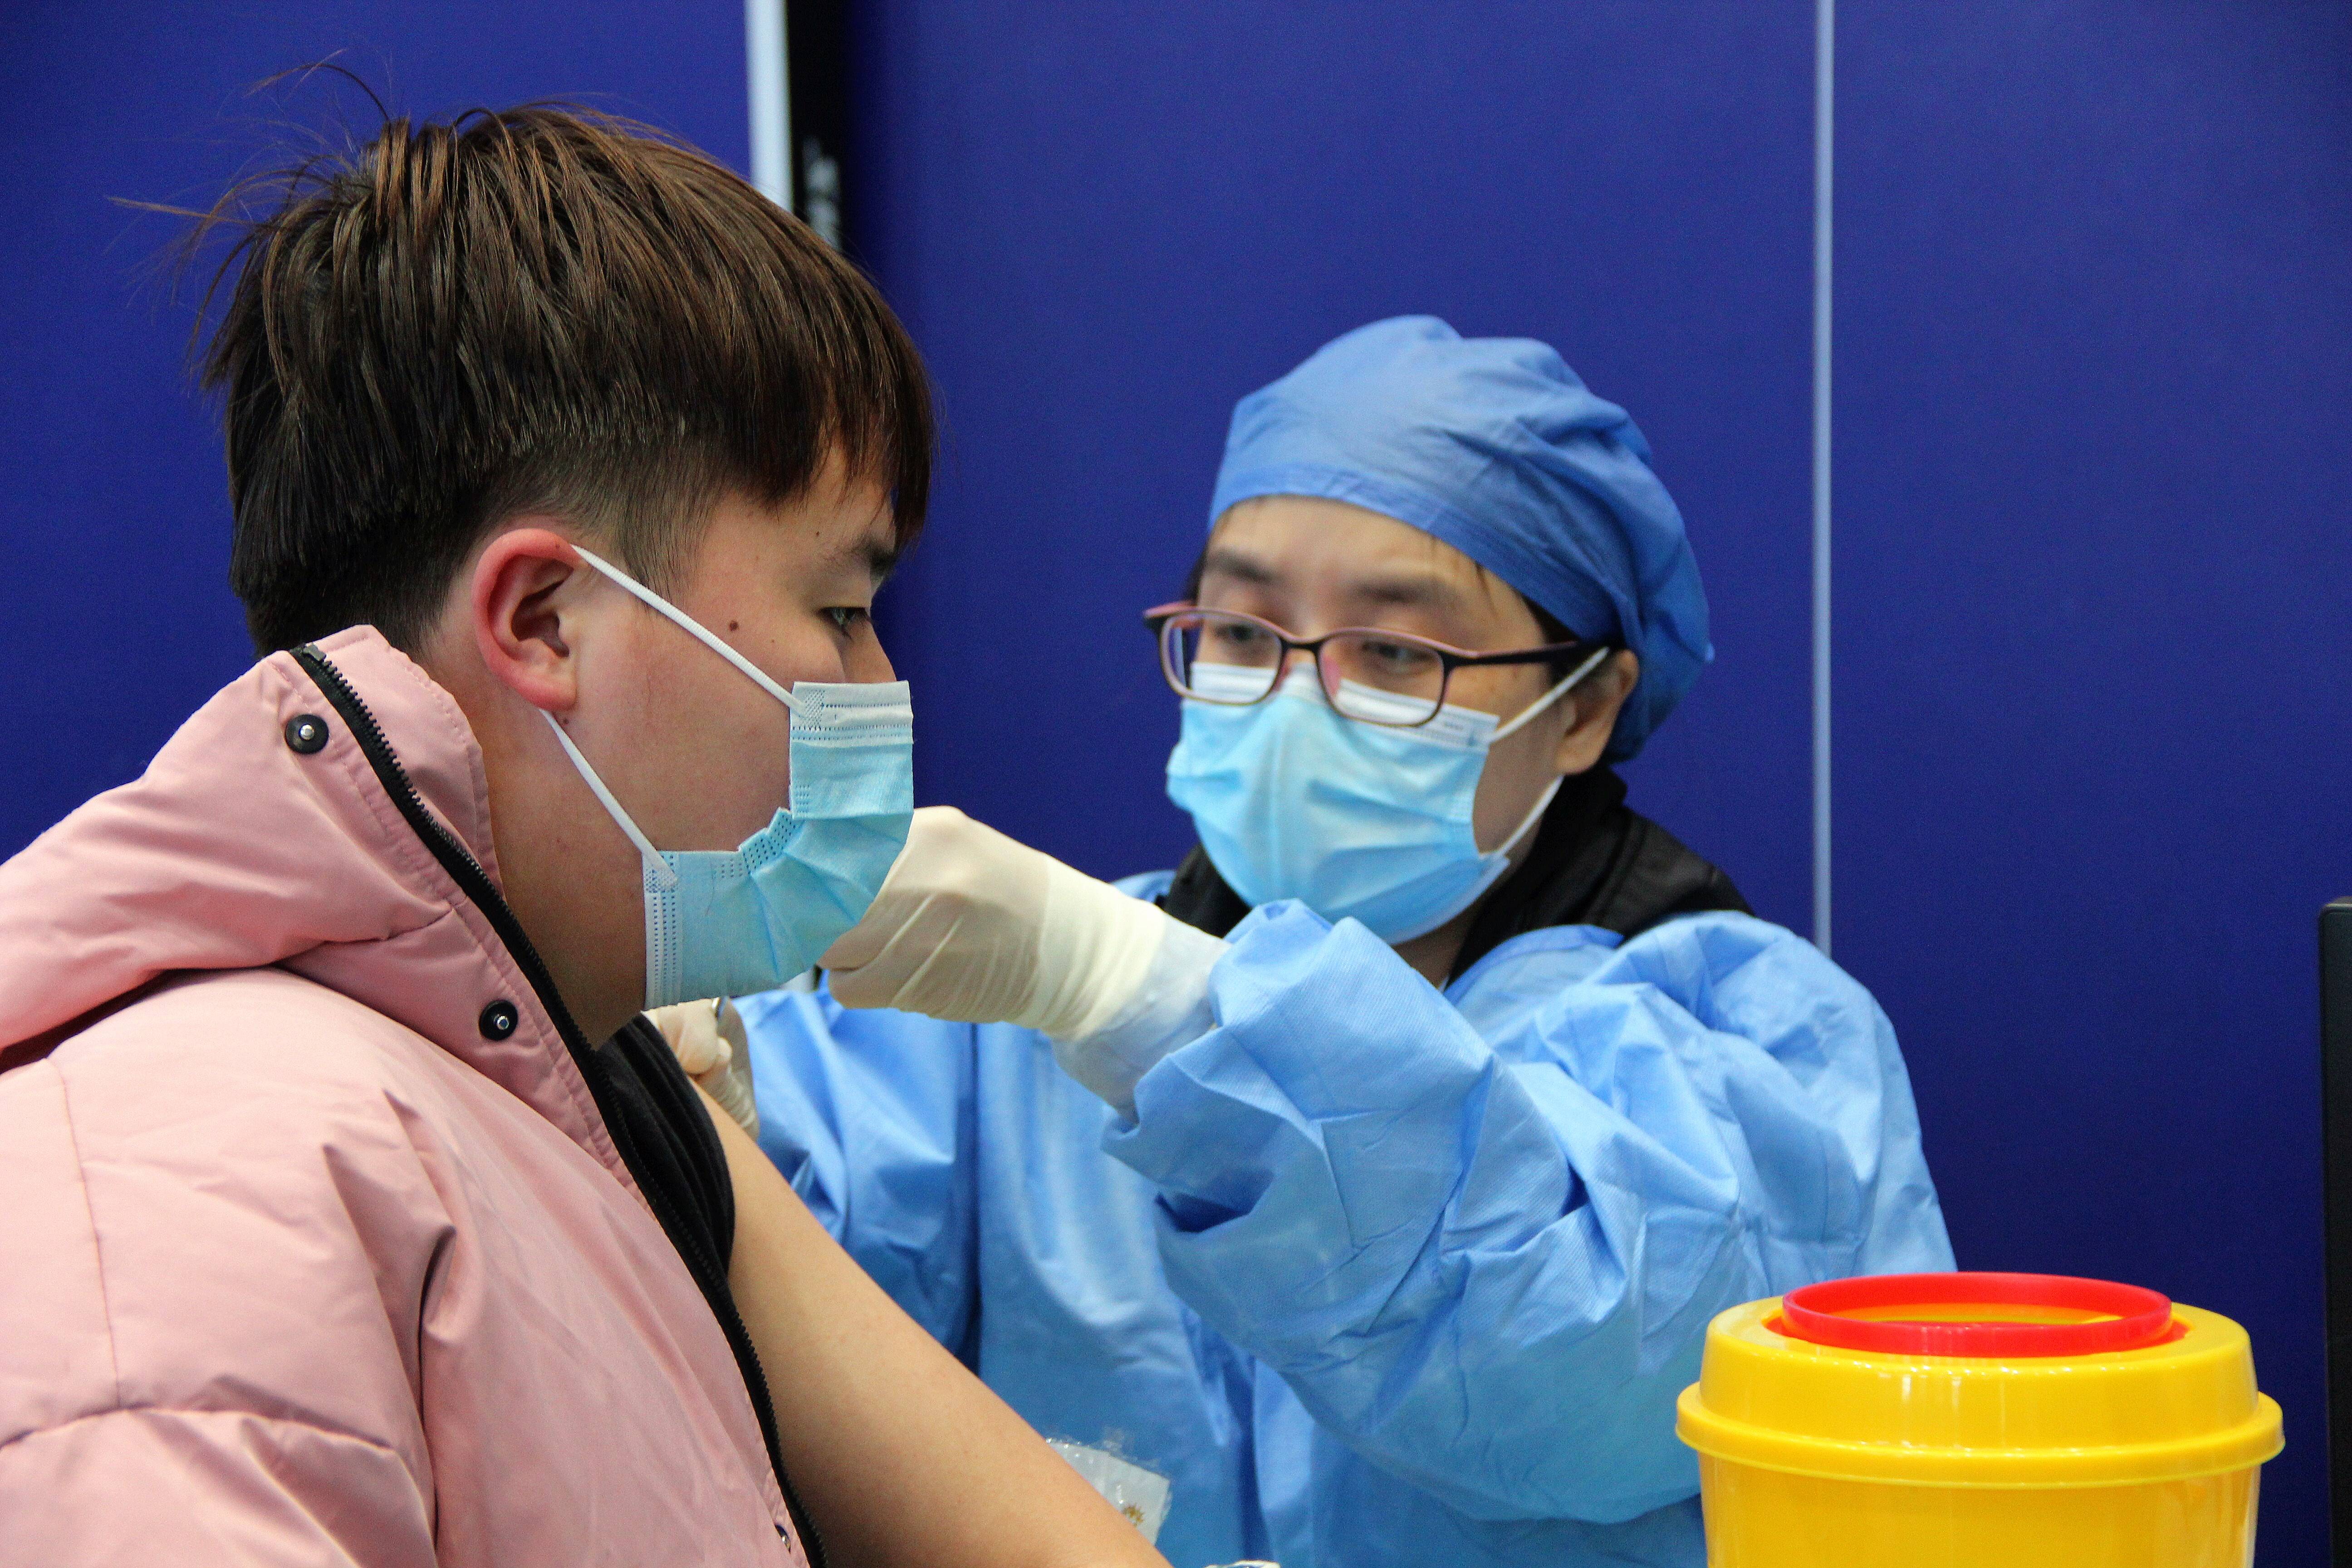 师生正在有序的进行新冠病毒加强针疫苗的接种。记者 陈蔚 报道